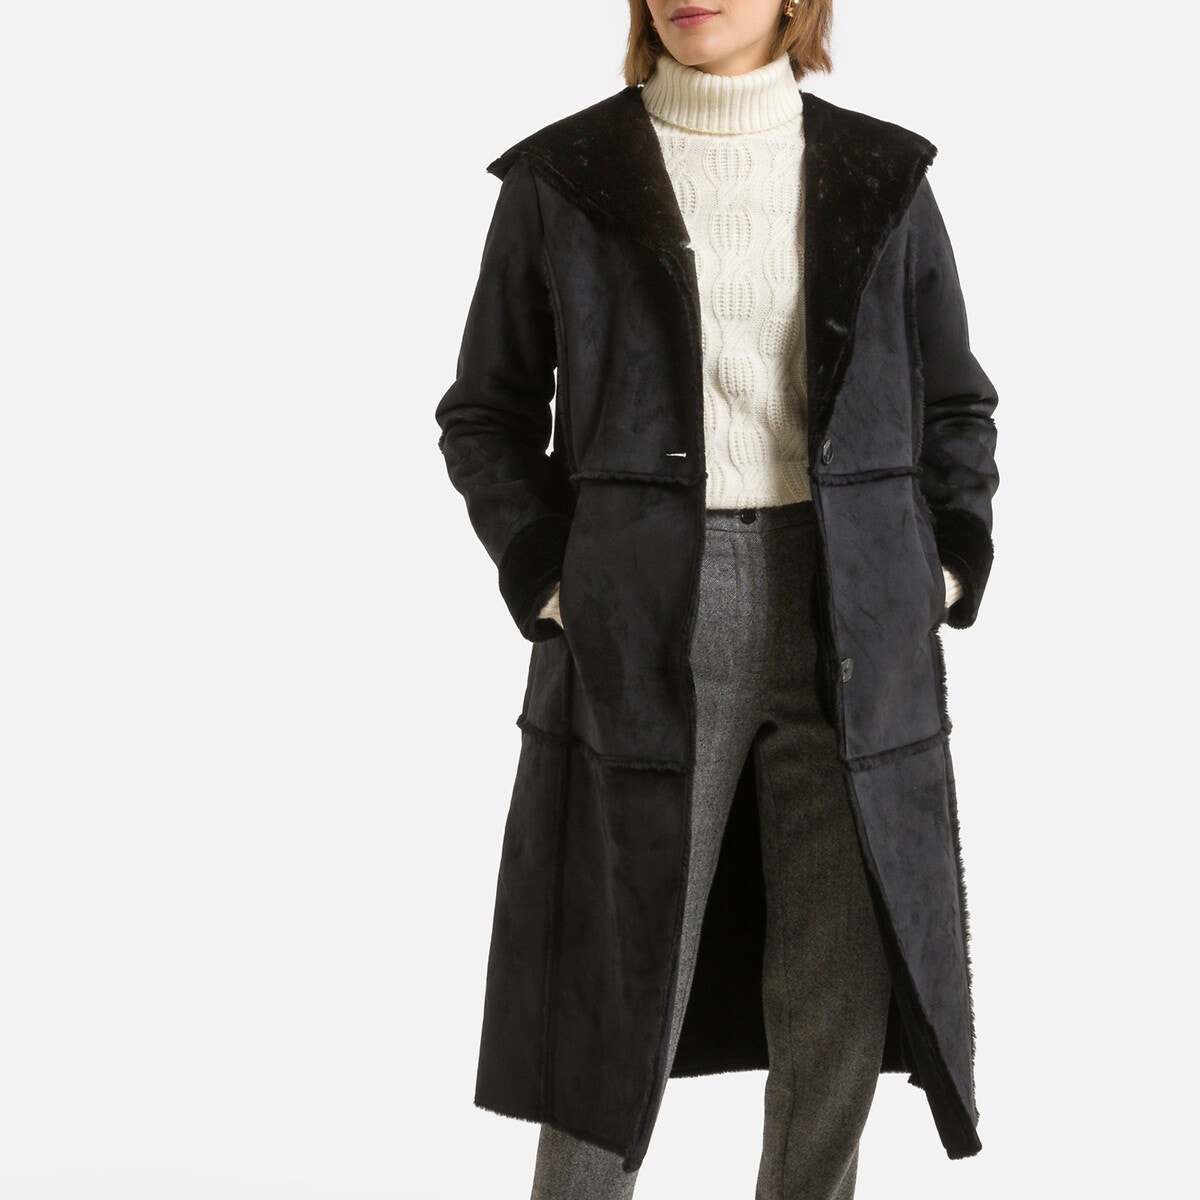 Παλτό με όψη μουτόν και κουκούλα